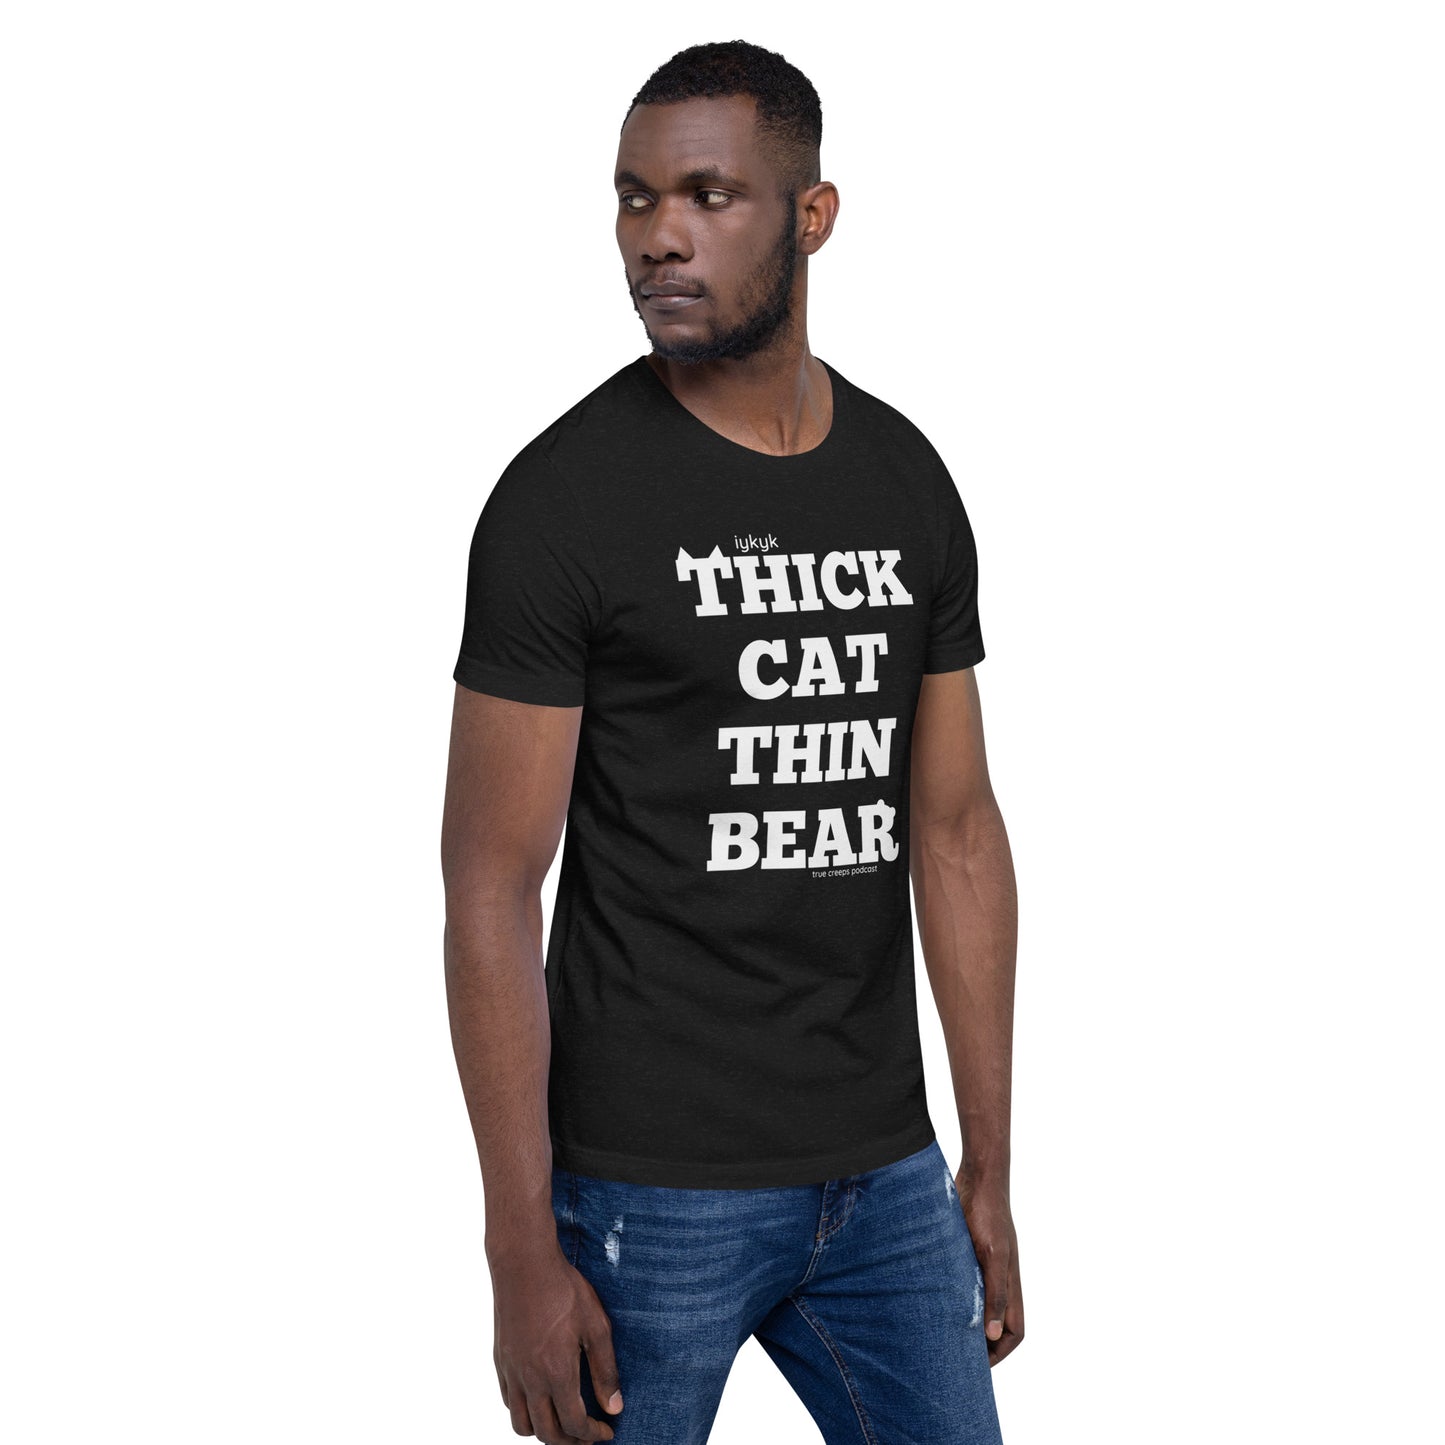 True Creeps - Thick Cat Thin Bear Tshirt